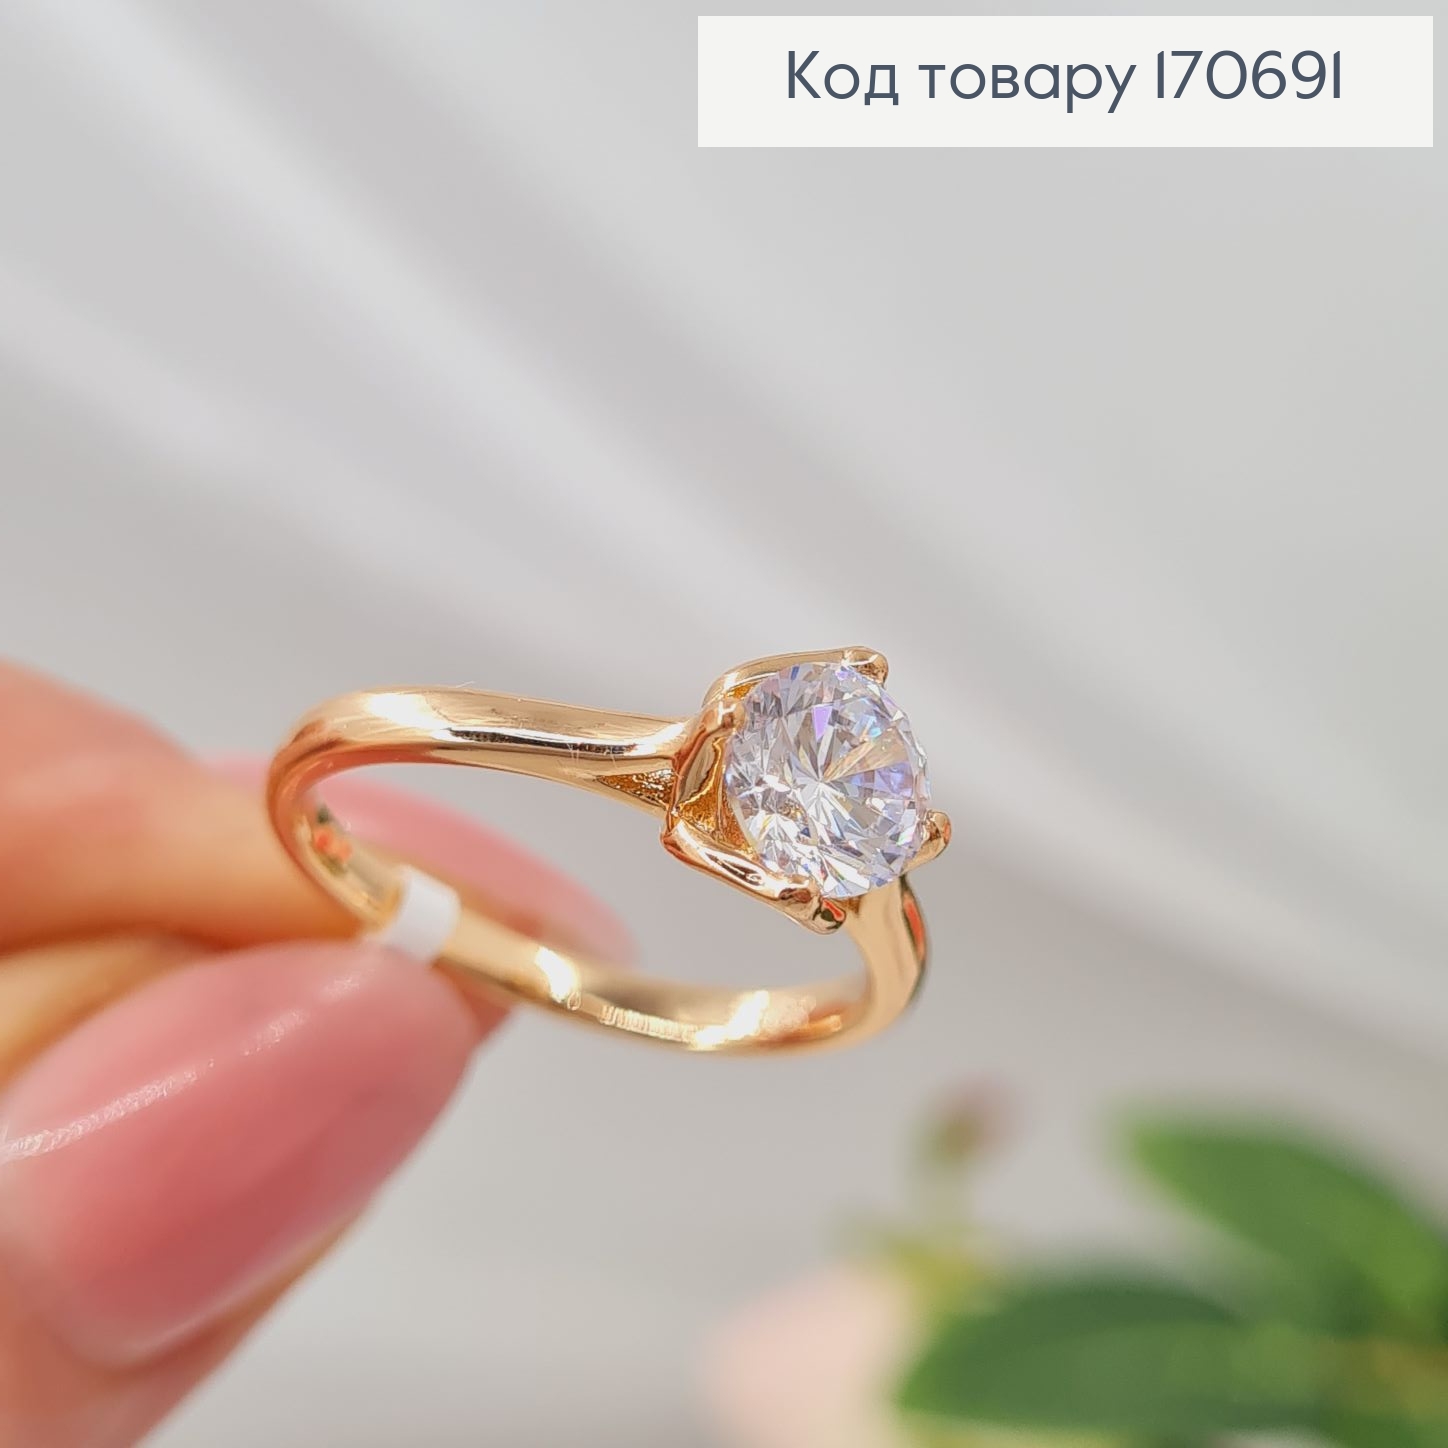 Перстень з Великим камінцем, Xuping 18К 170691 фото 3